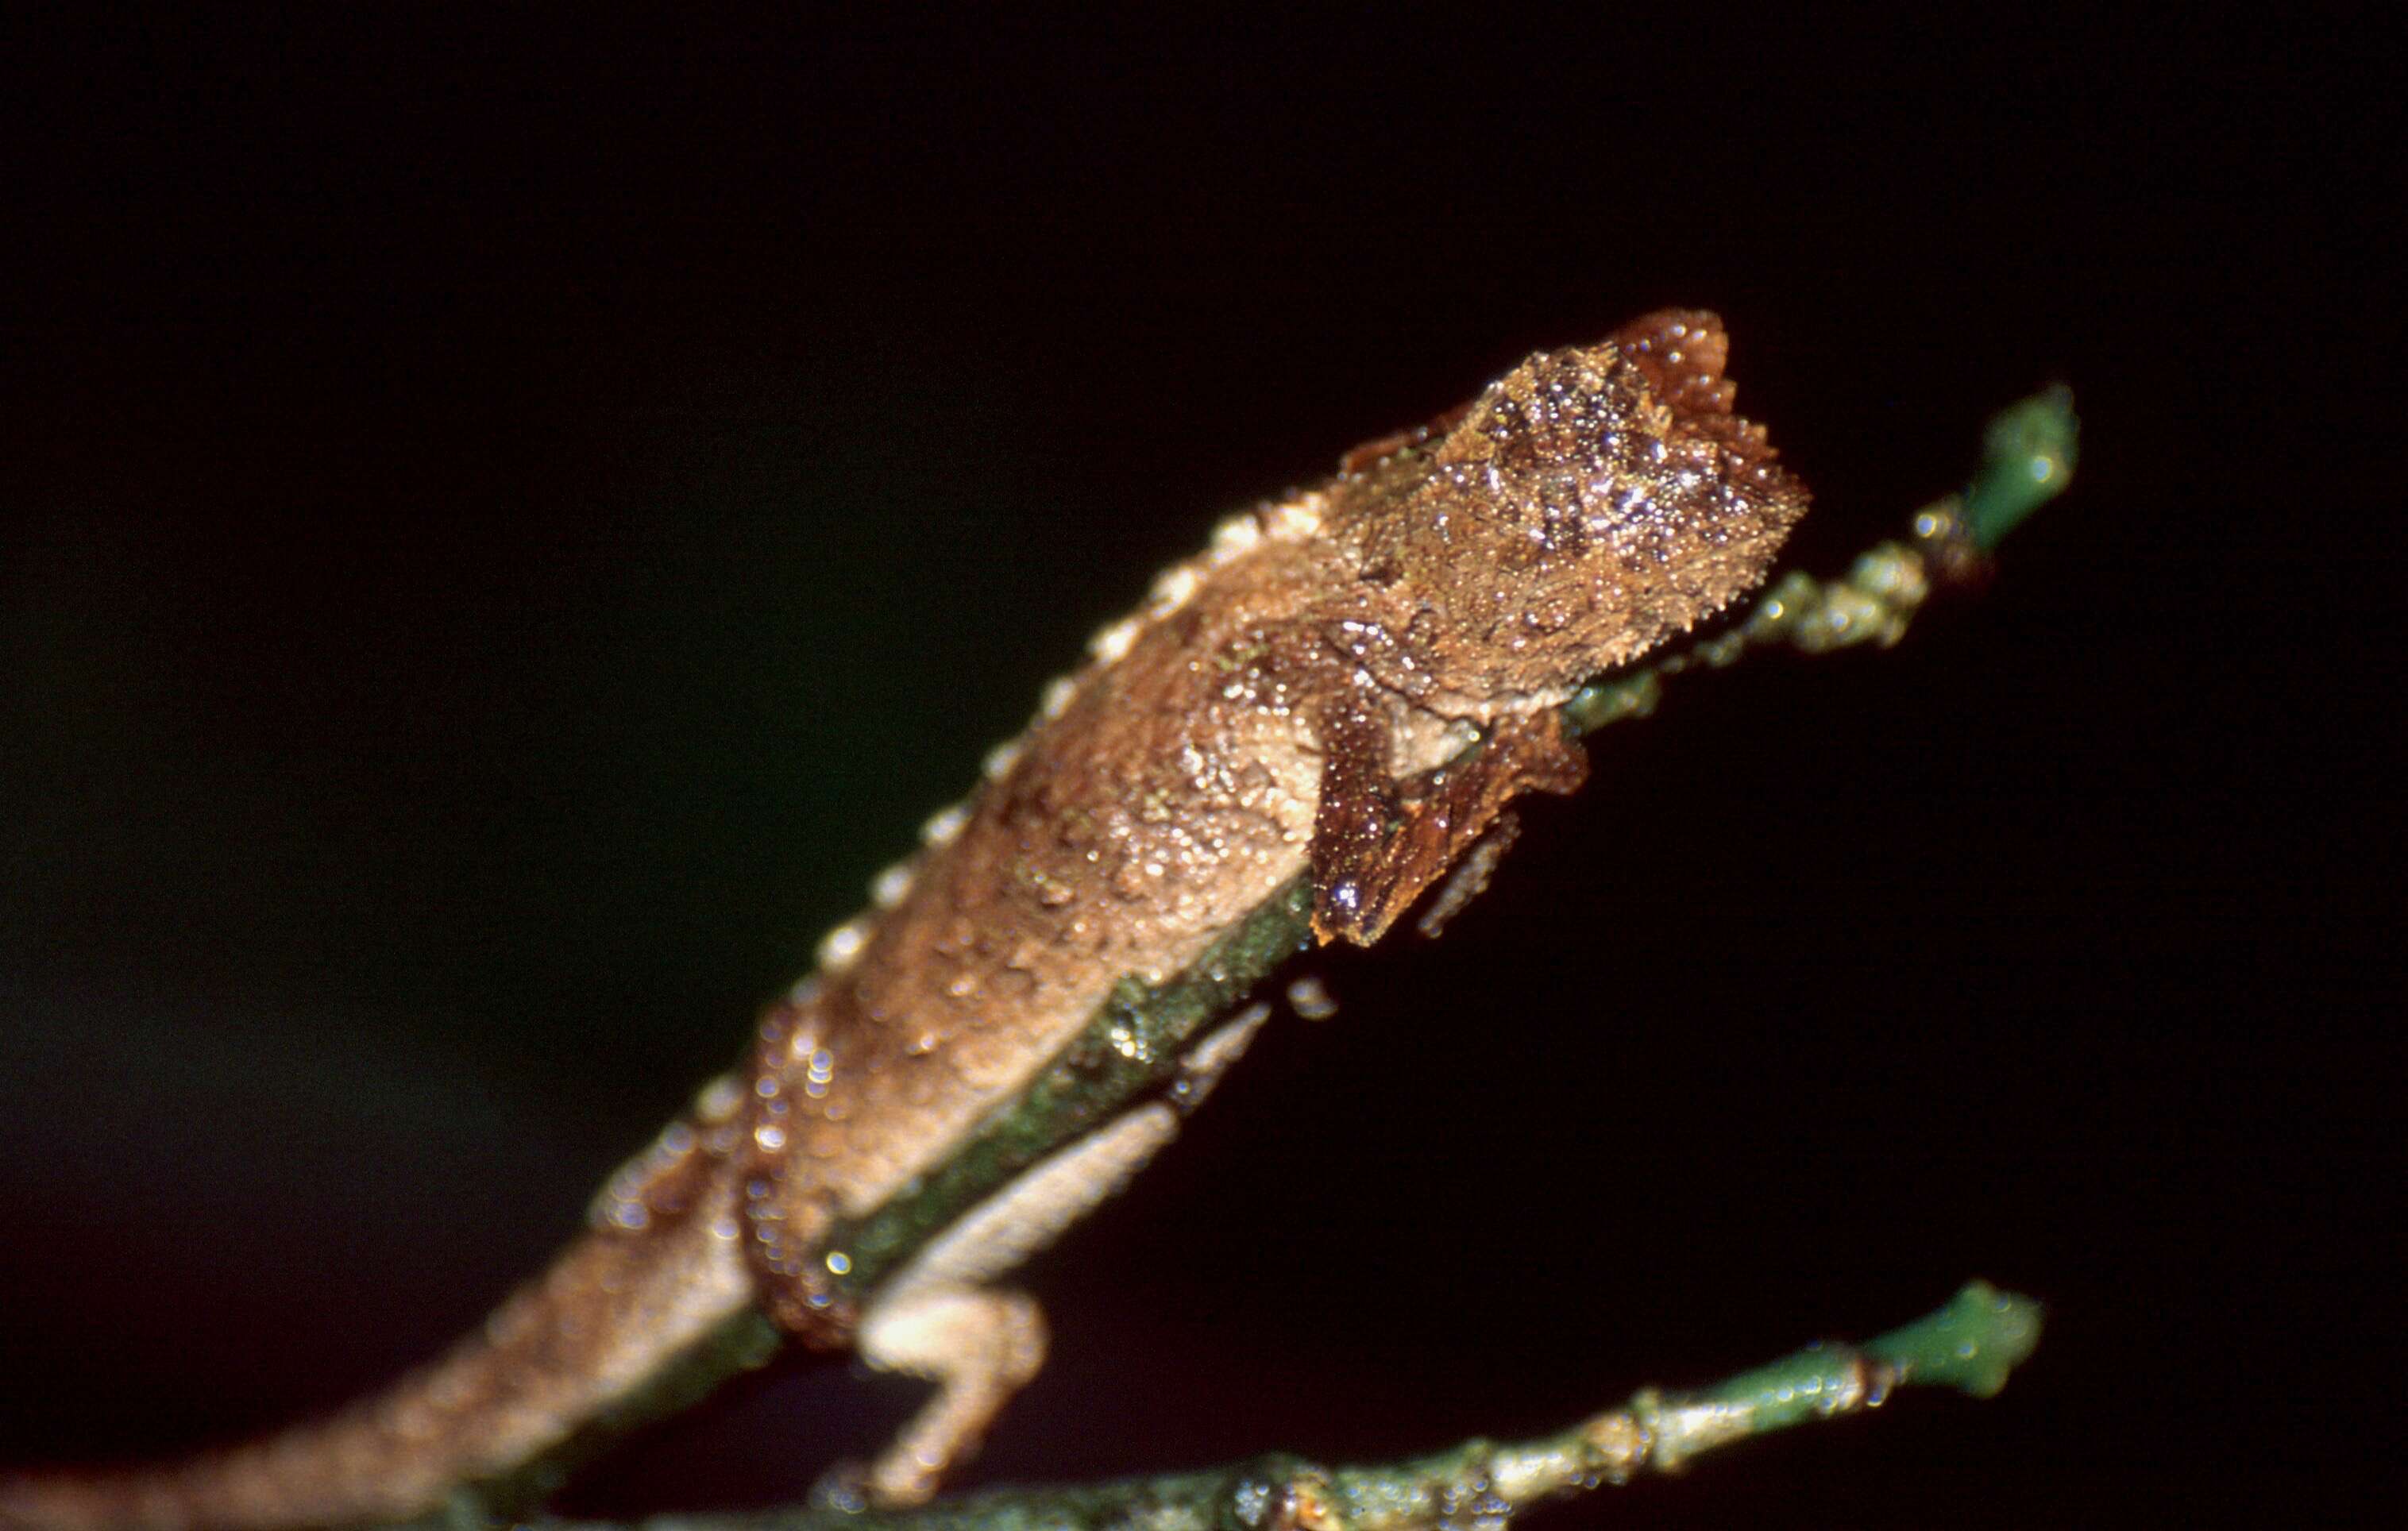 Image of Leaf chameleon